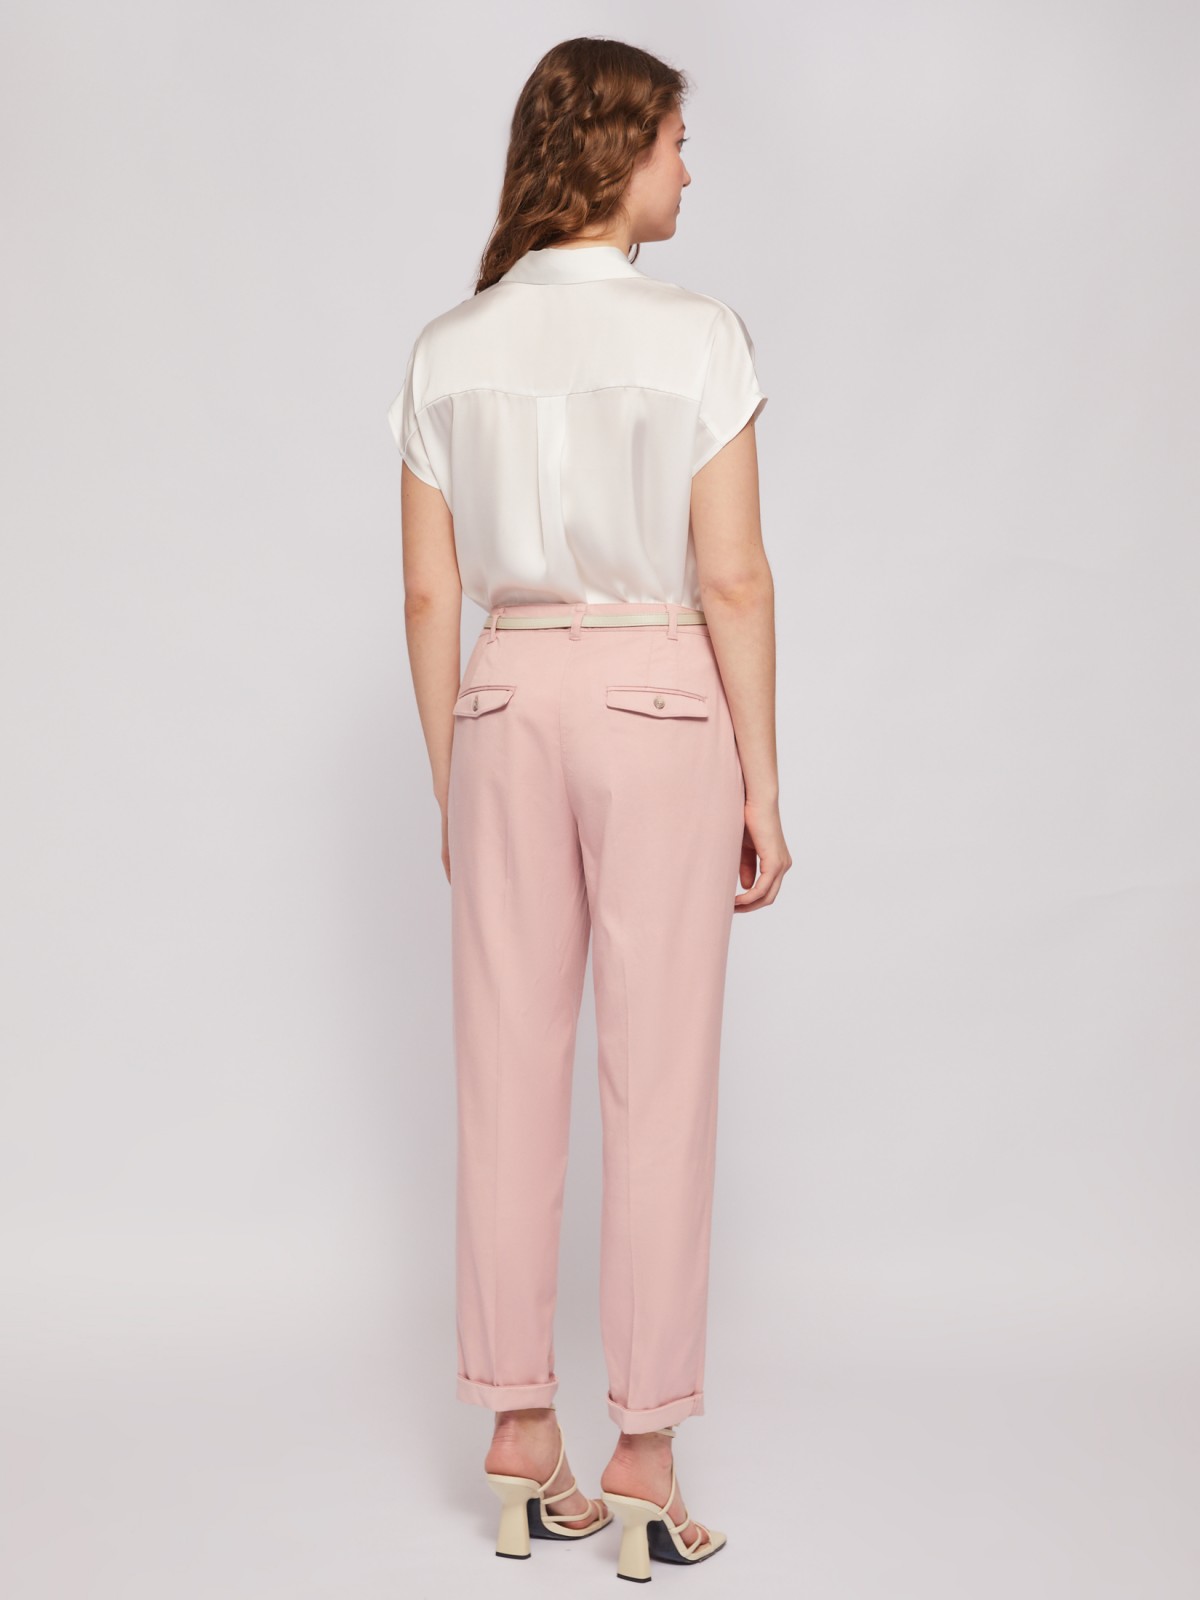 Офисные брюки-чинос со стрелками и ремнём zolla 02422736F043, цвет розовый, размер S - фото 5